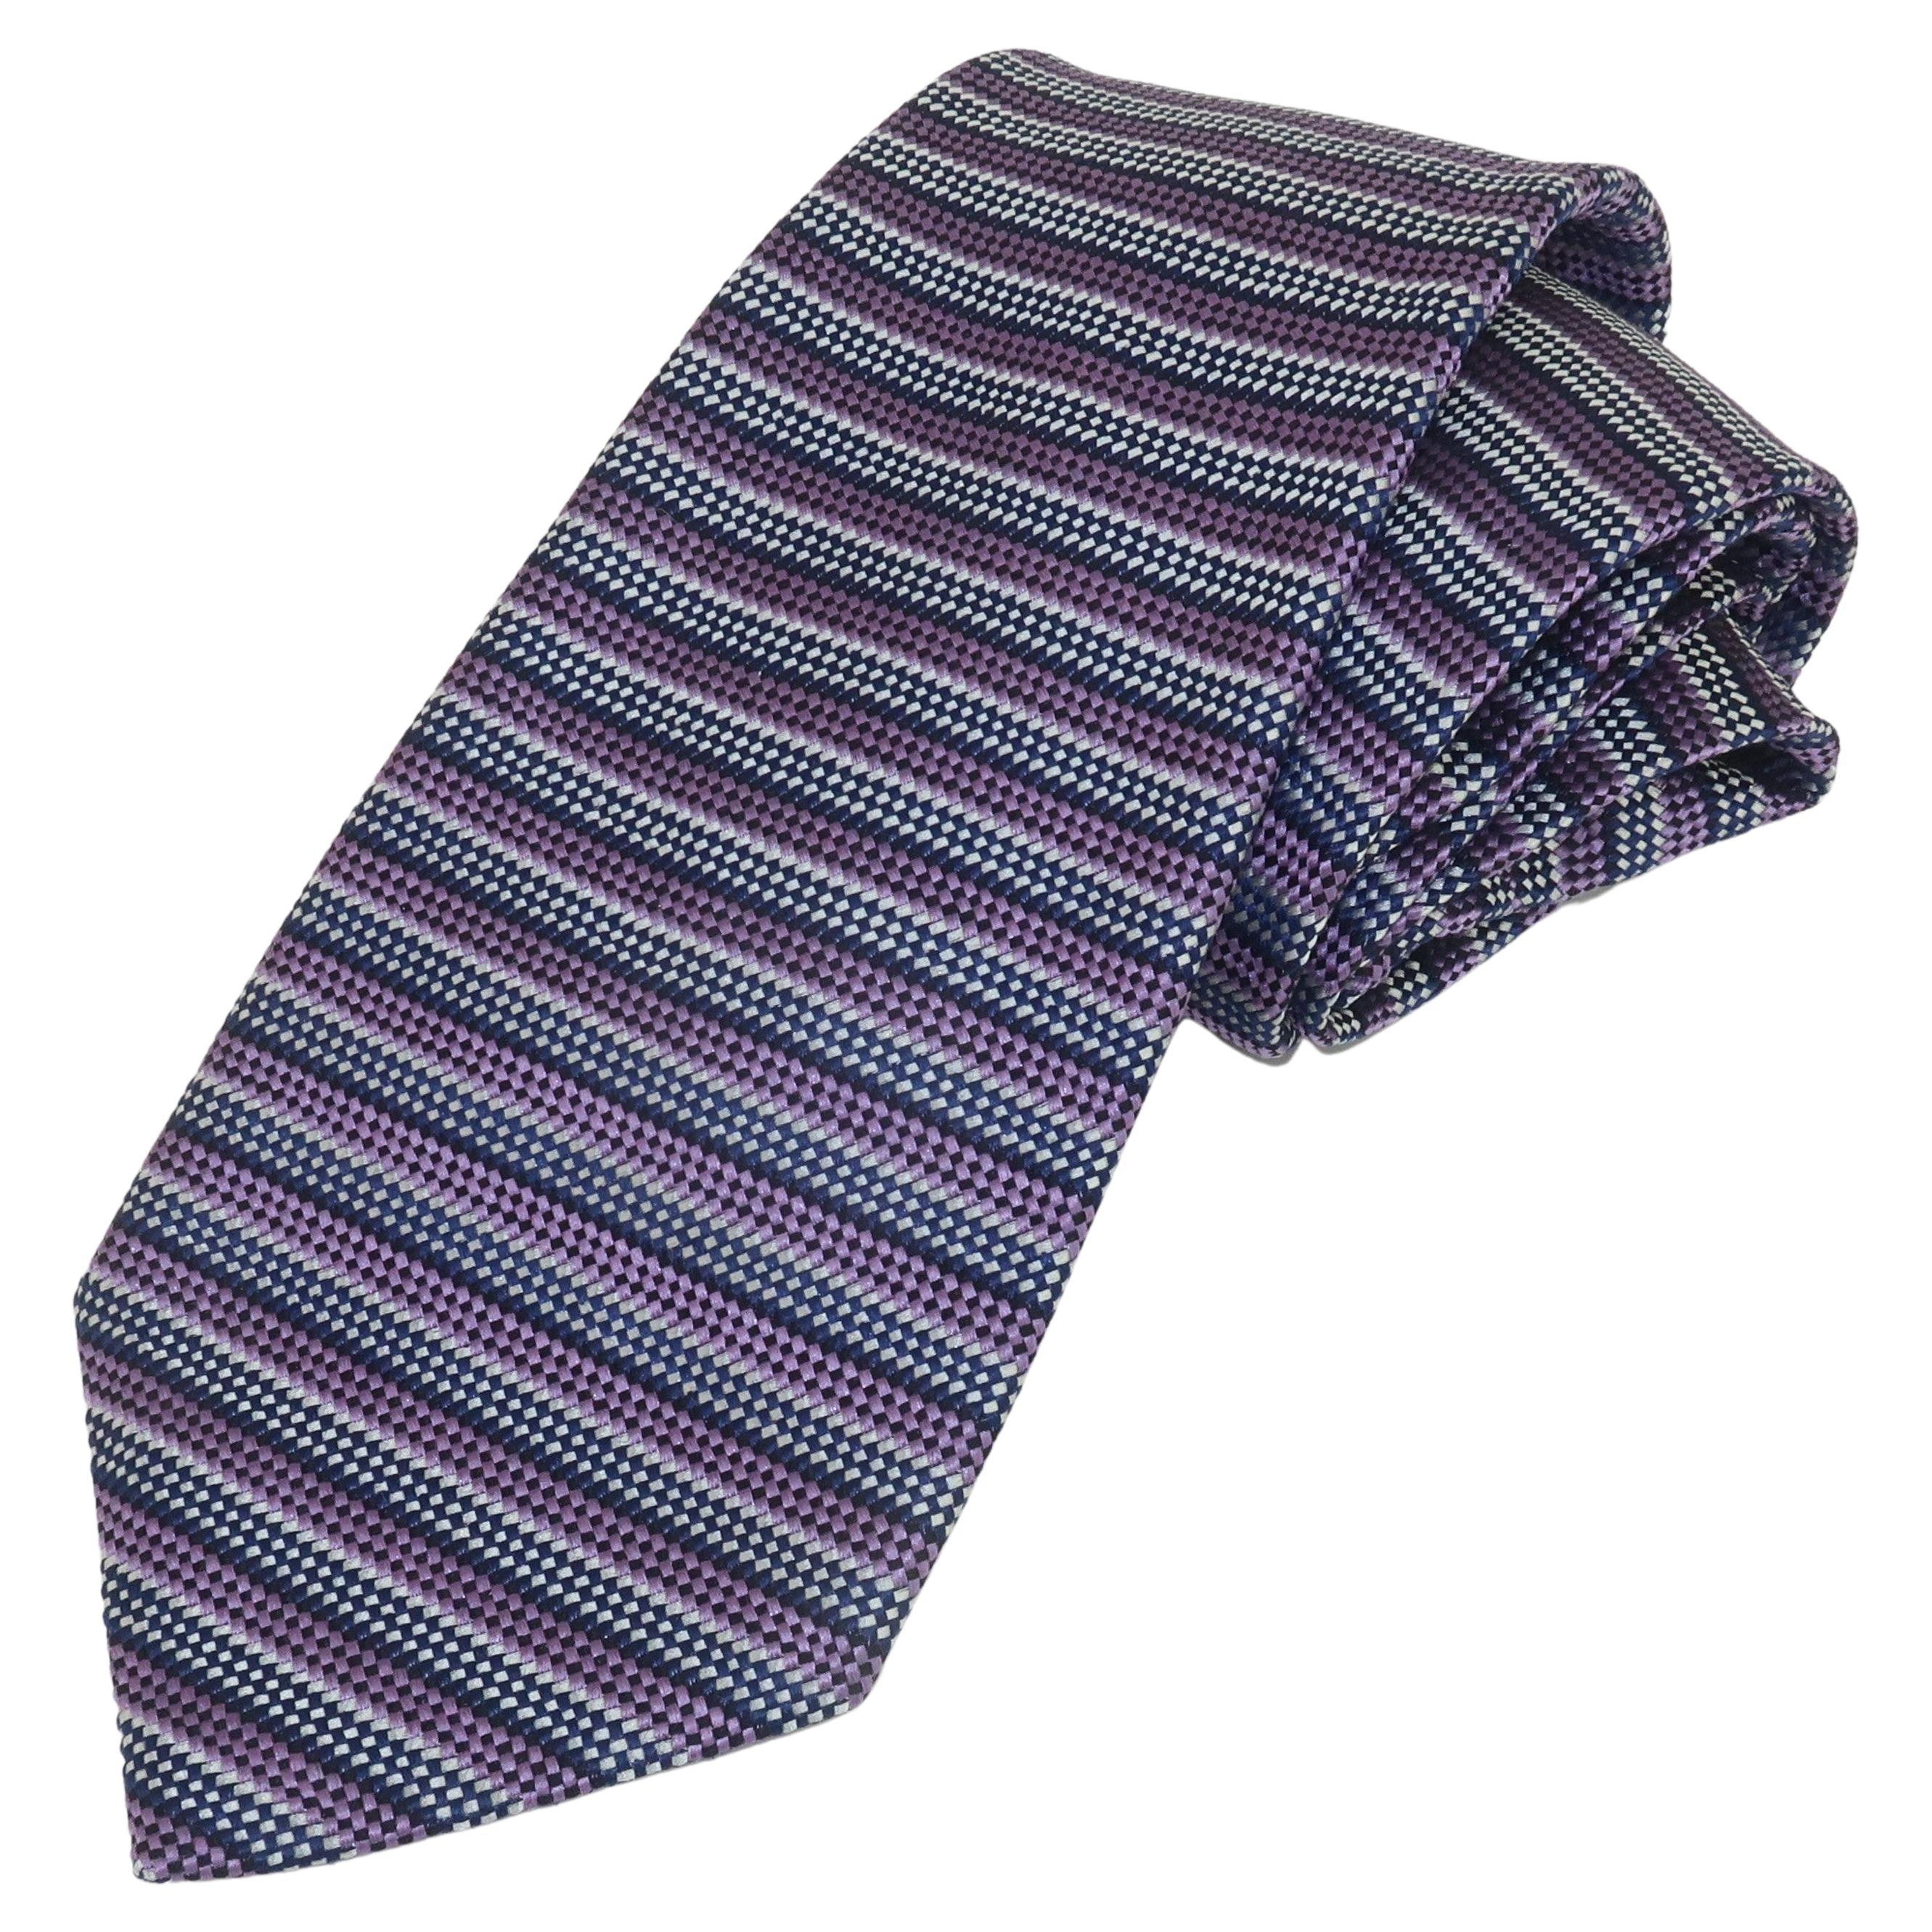 Turnbull & Asser Men's Silk Neck Tie Necktie